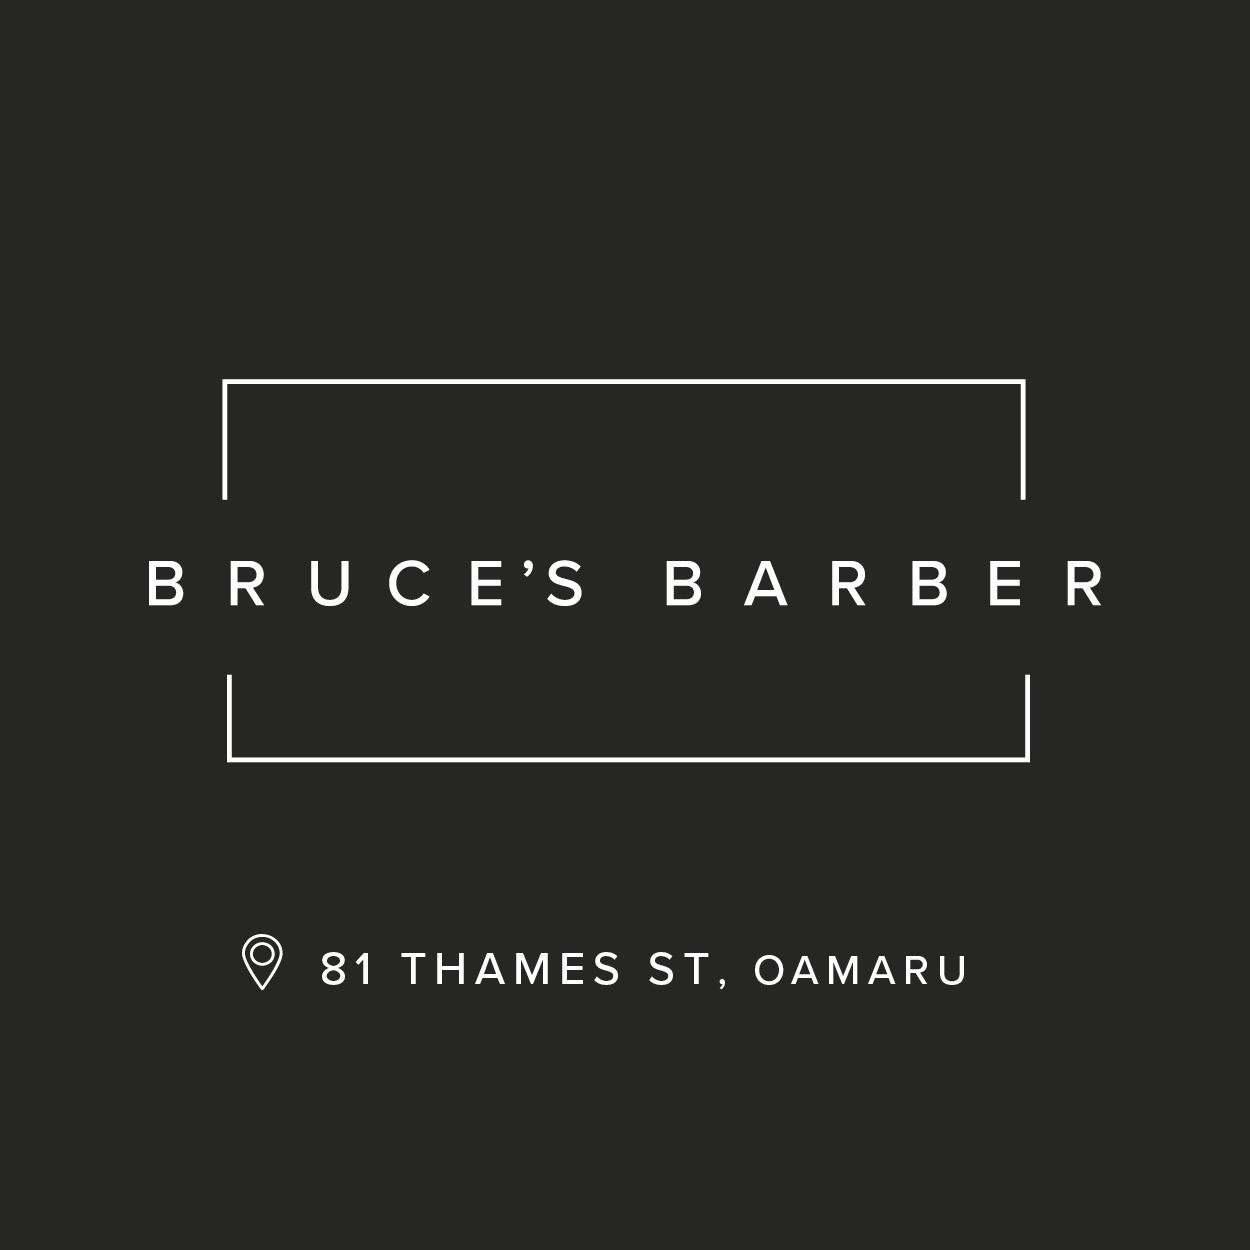 Bruce's Barber